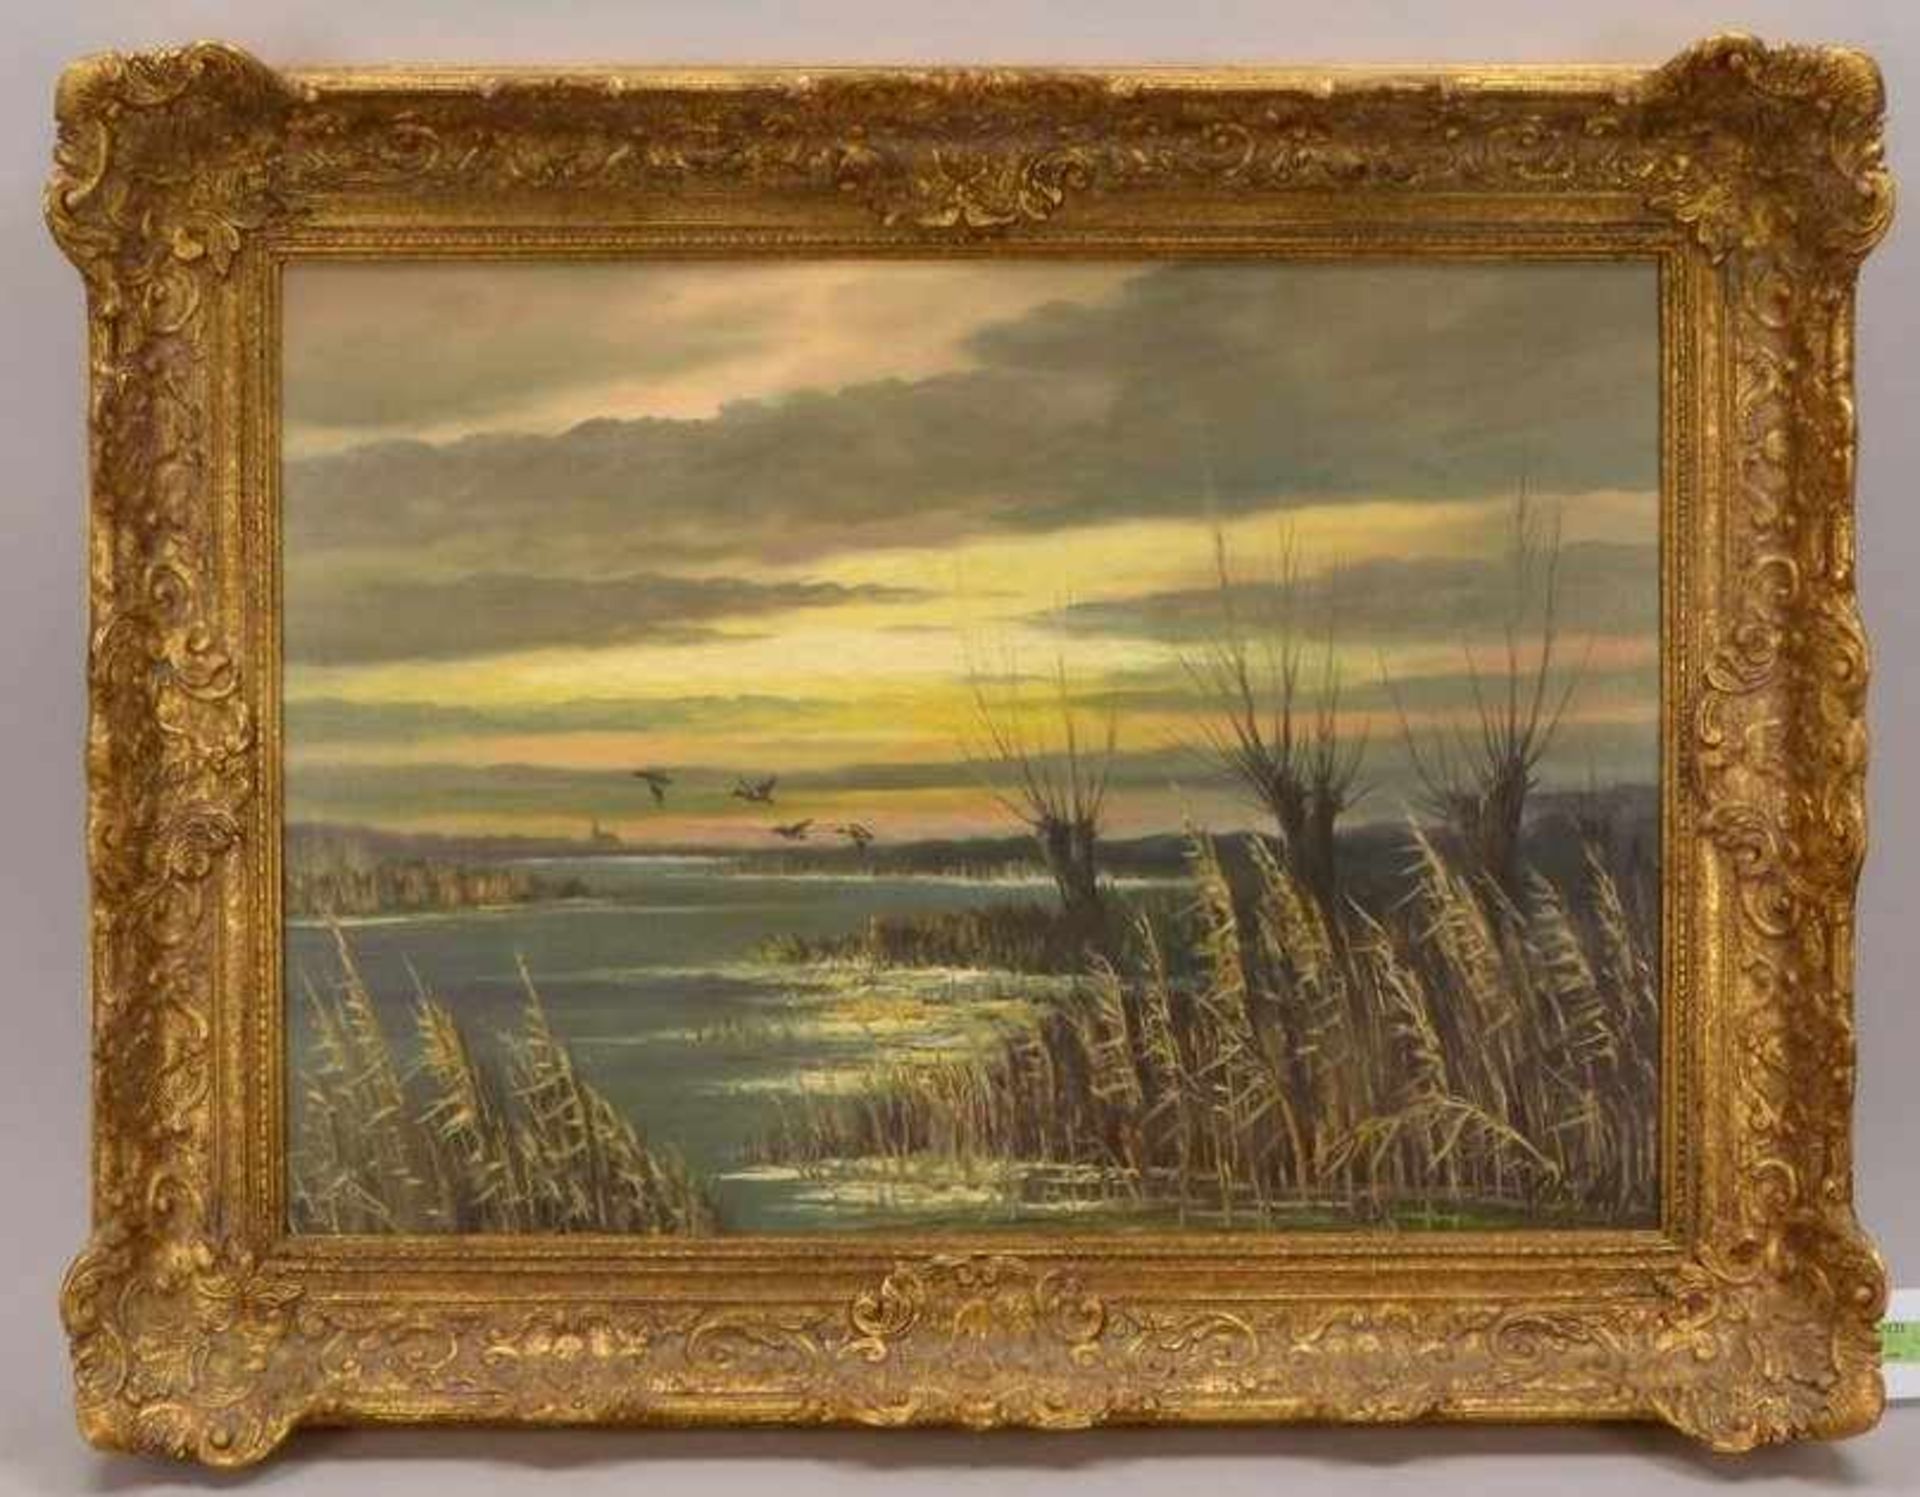 Gemälde, 'Seenlandschaft', Öl/Lw, unten rechts (nicht eindeutig leserlich) signiert; Bildmaße 50 x